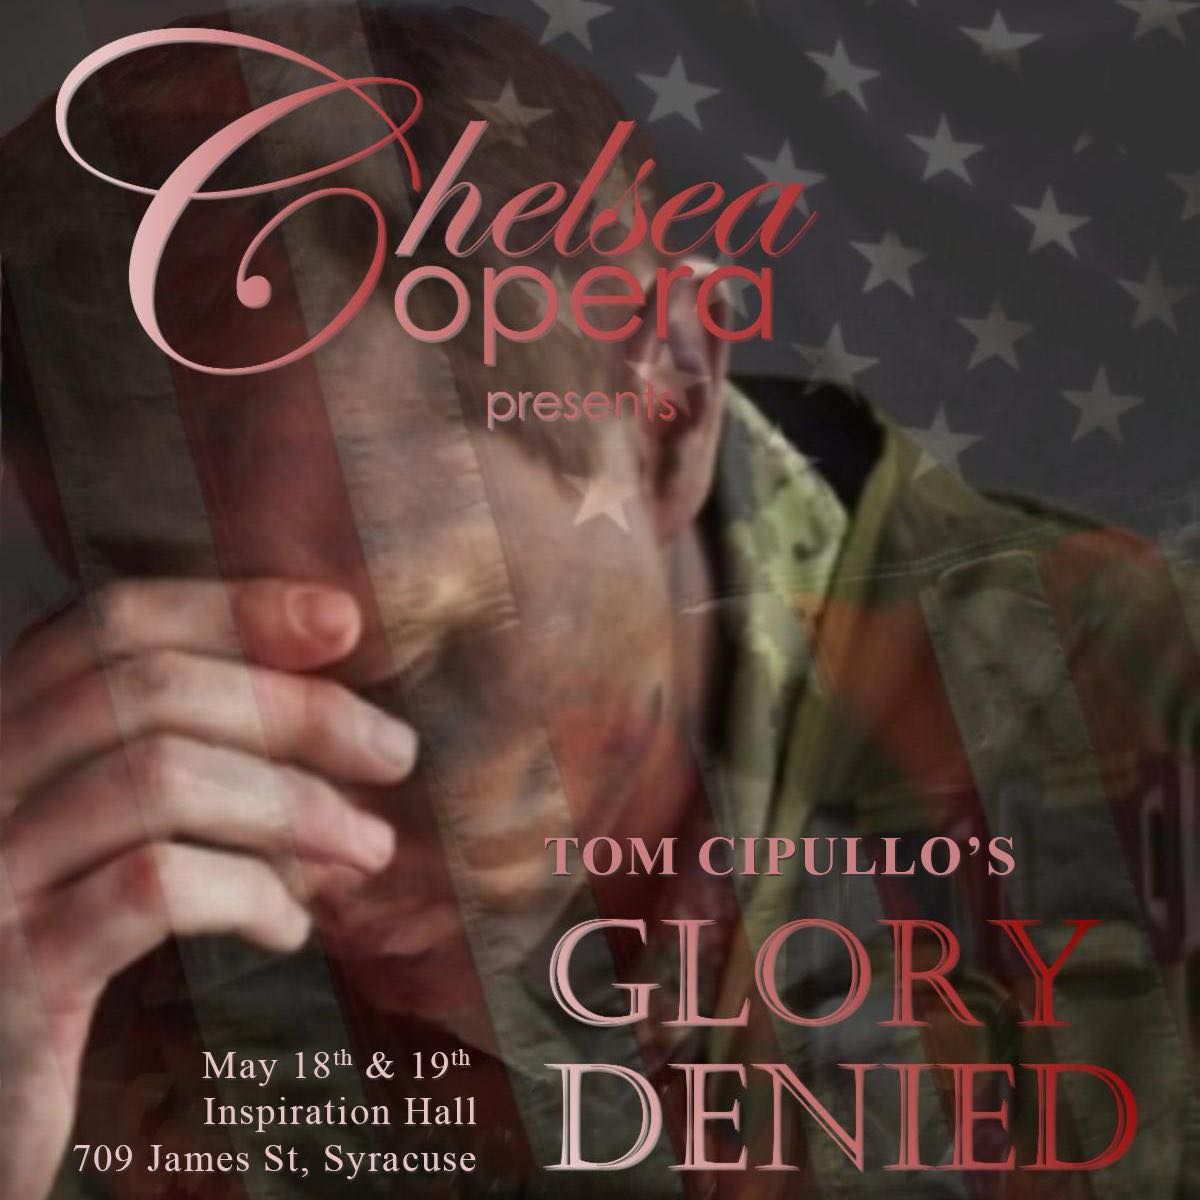 Chelsea Opera presents Glory Denied